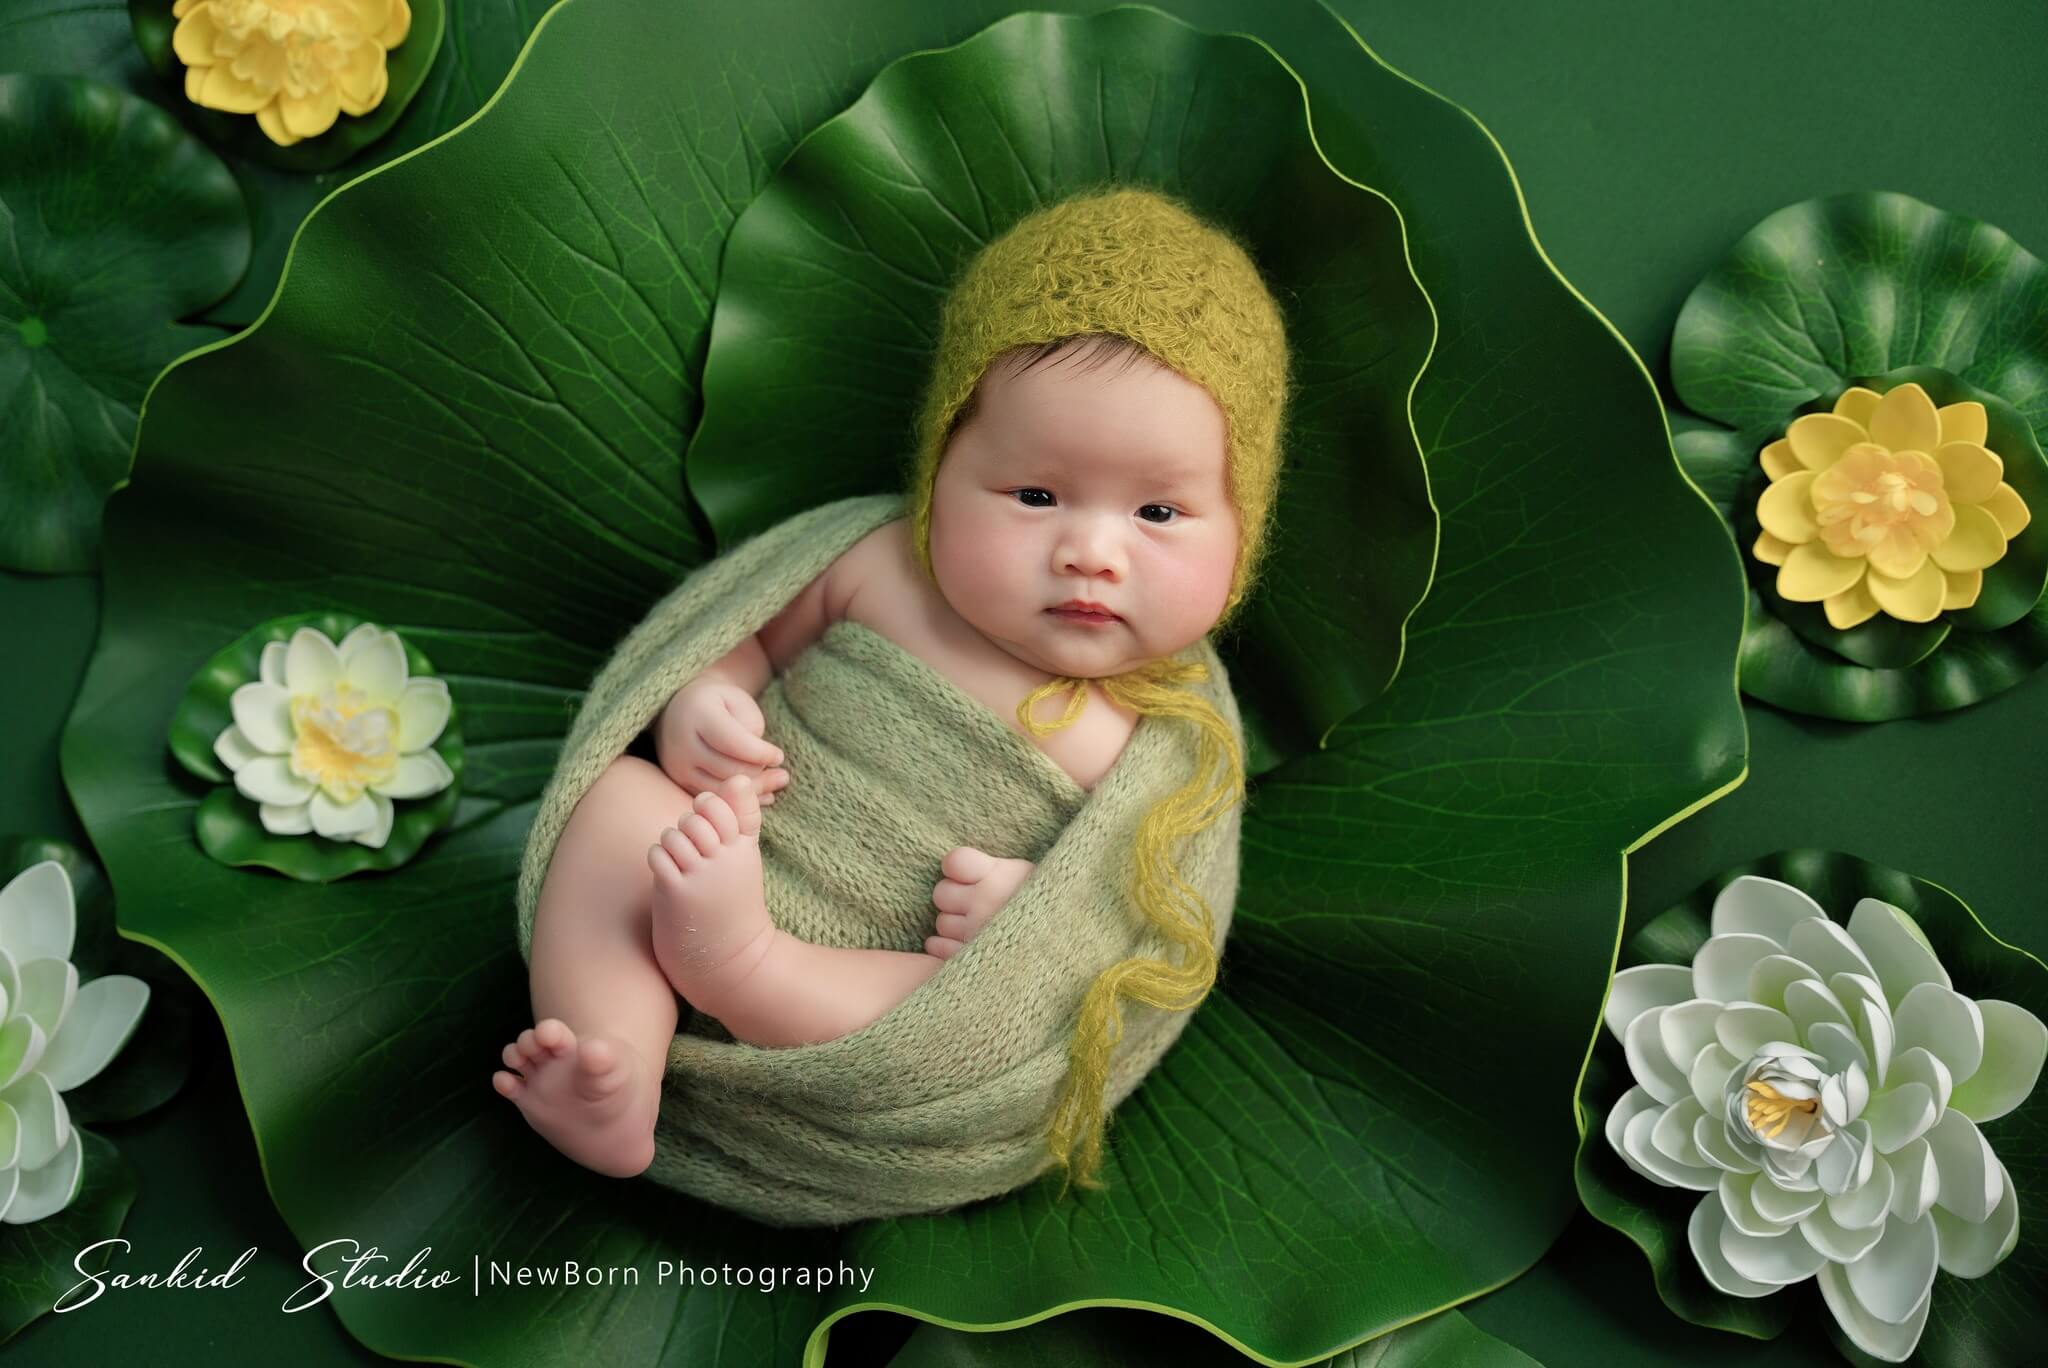 Concept chụp ảnh cho bé sơ sinh với hoa và lá sen